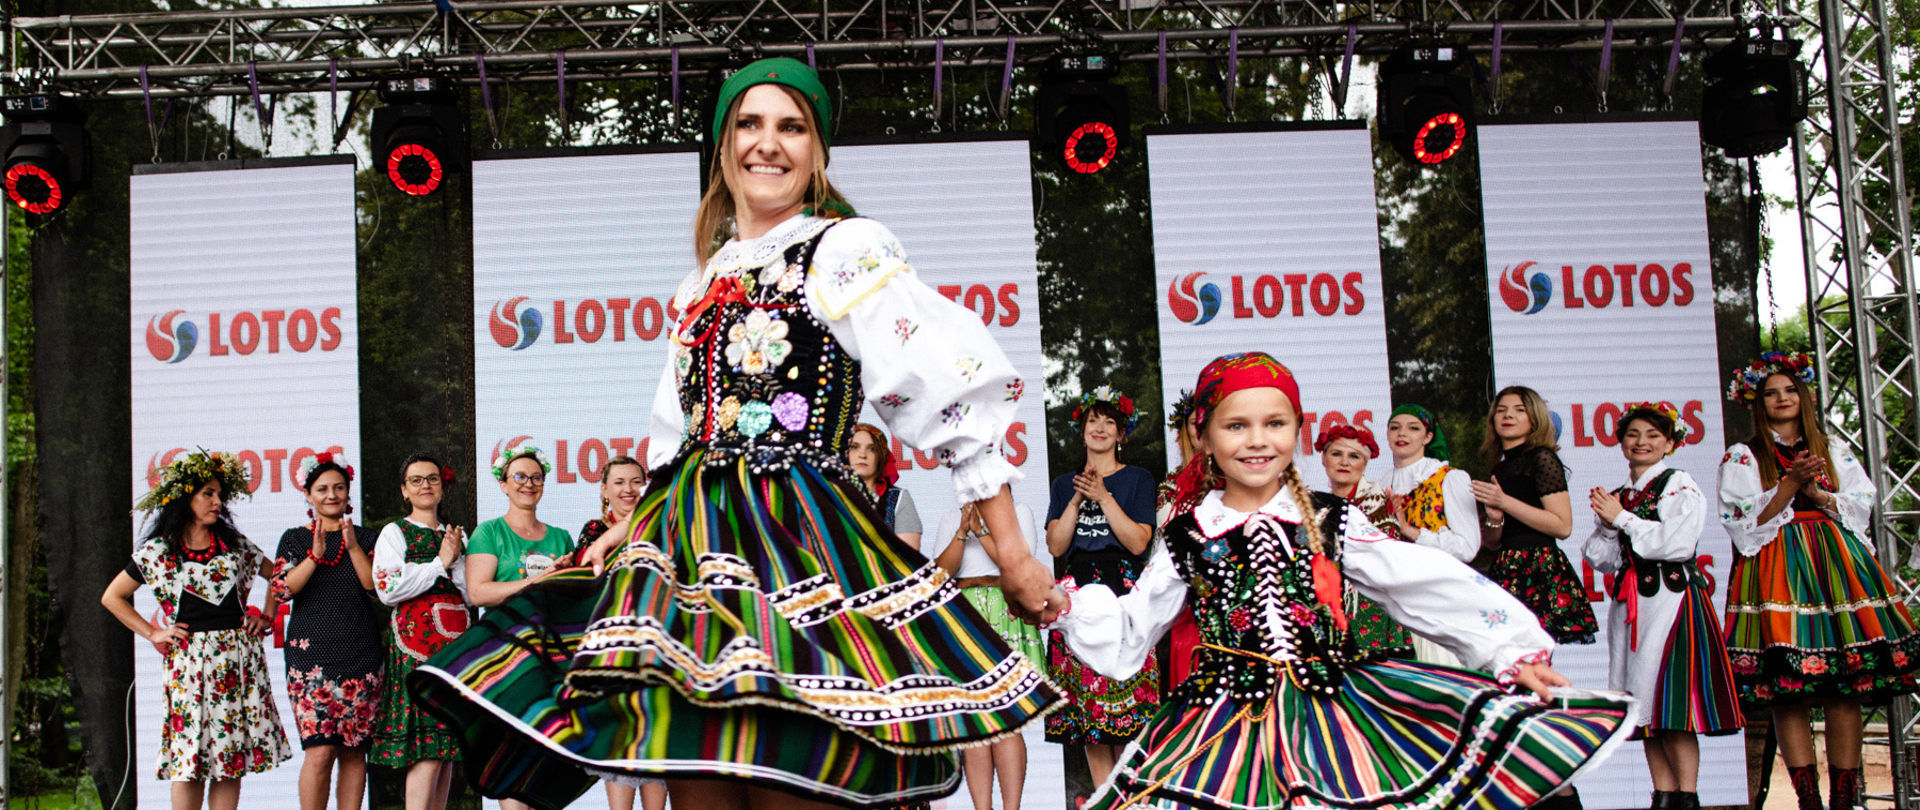 Dorosła kobieta oraz dziewczynka w strojach ludowych tańczą na scenie. W drugim rzędzie stoją w szeregu kobiety w tradycyjnych kolorowych ludowych strojach. Widać również pięć pionowych banerów z logotypem marki Lotos